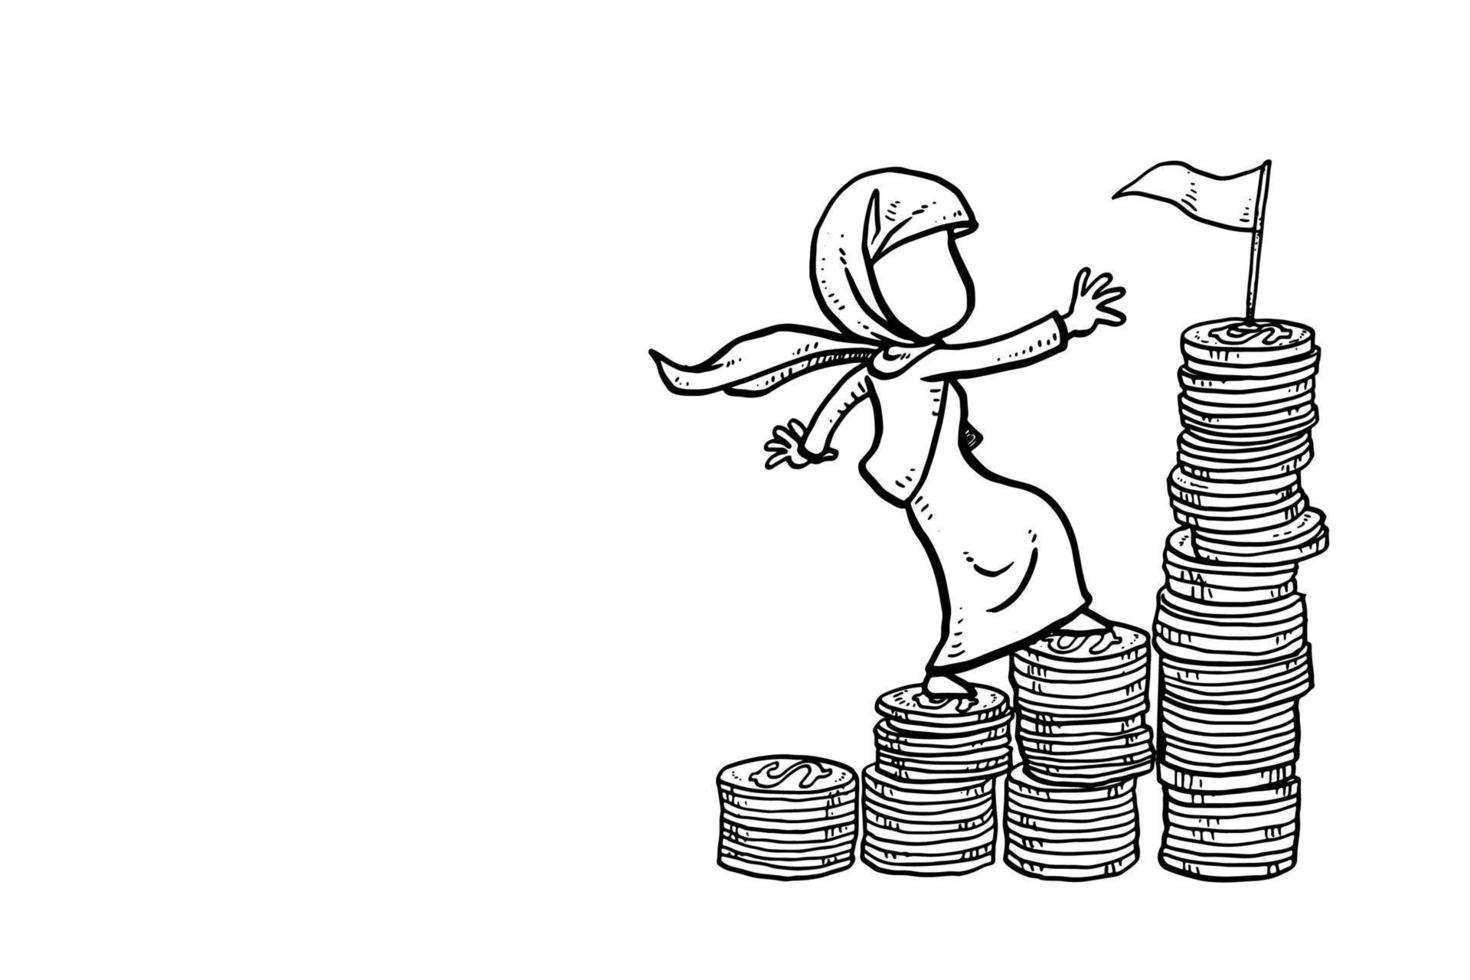 femme d'affaires musulmane asiatique étape grimpant sur la pile d'argent, atteignant le salaire idéal à la maison. conception d'illustration vectorielle dessinée à la main vecteur